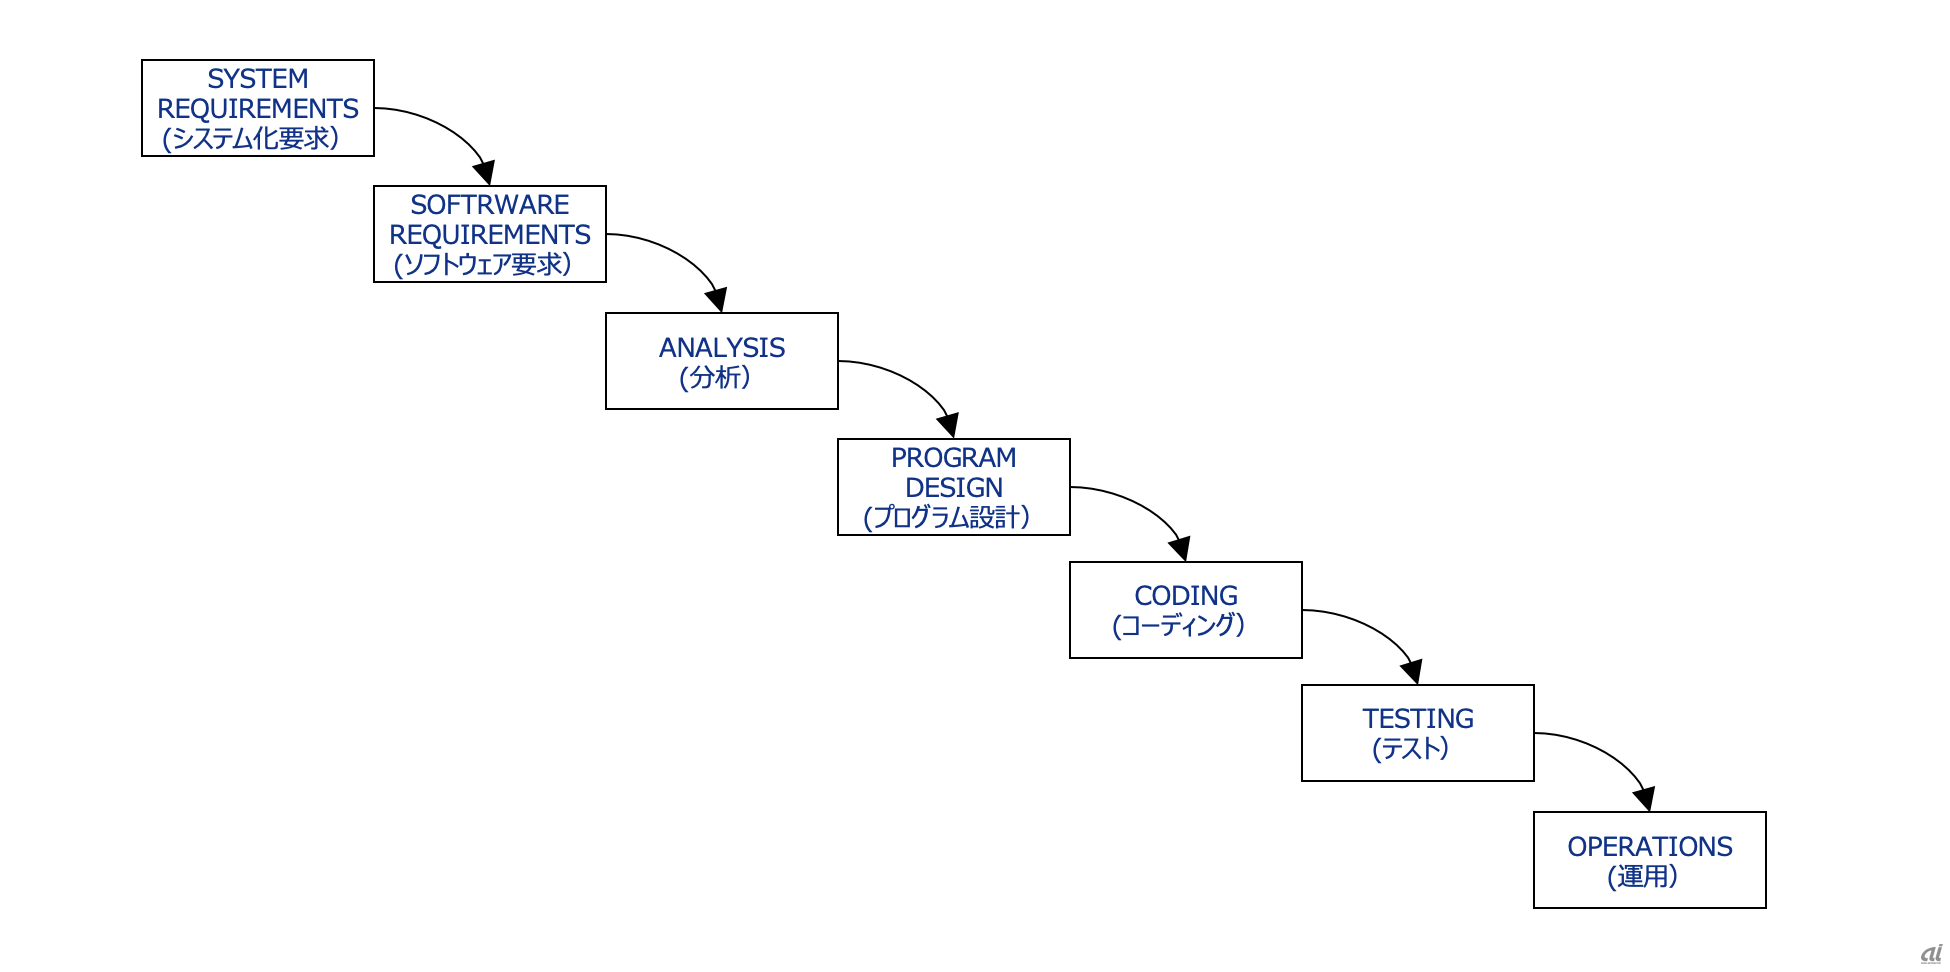 図1 Winston W. Royce氏の論文で提唱された開発プロセス 
（出所：「Managing the Development of Large Software Systems（大規模なソフトウェアシステム開発の管理）」を基にKPMG作成）
